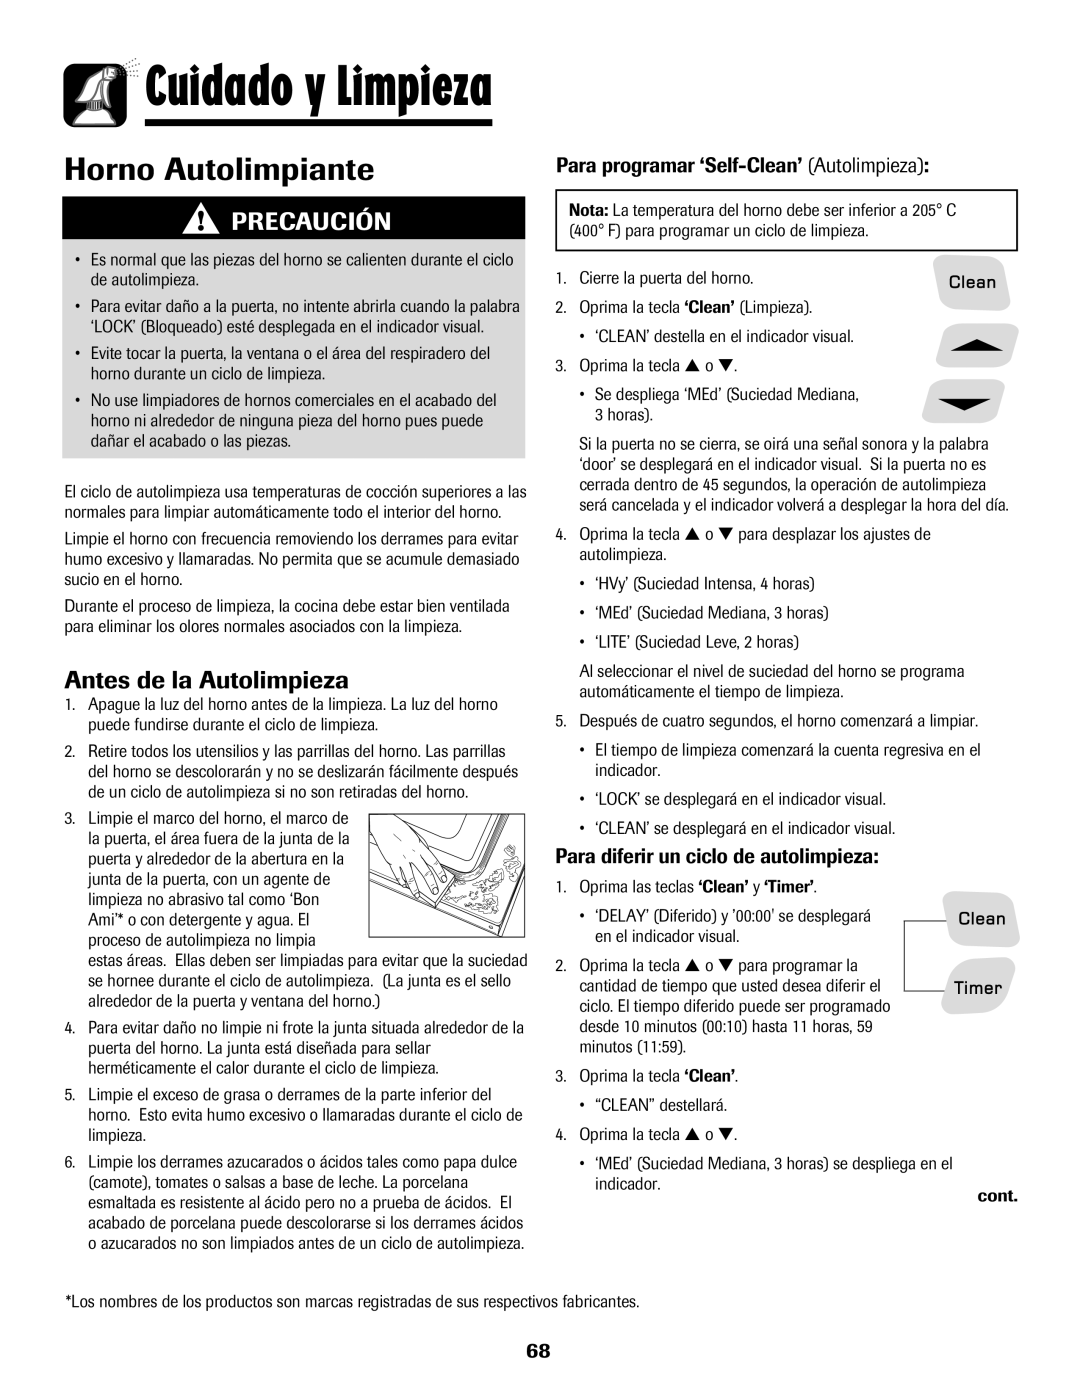 Amana 8113P598-60 manual Cuidado y Limpieza, Antes de la Autolimpieza, Para programar ‘Self-Clean’ Autolimpieza, Precaución 